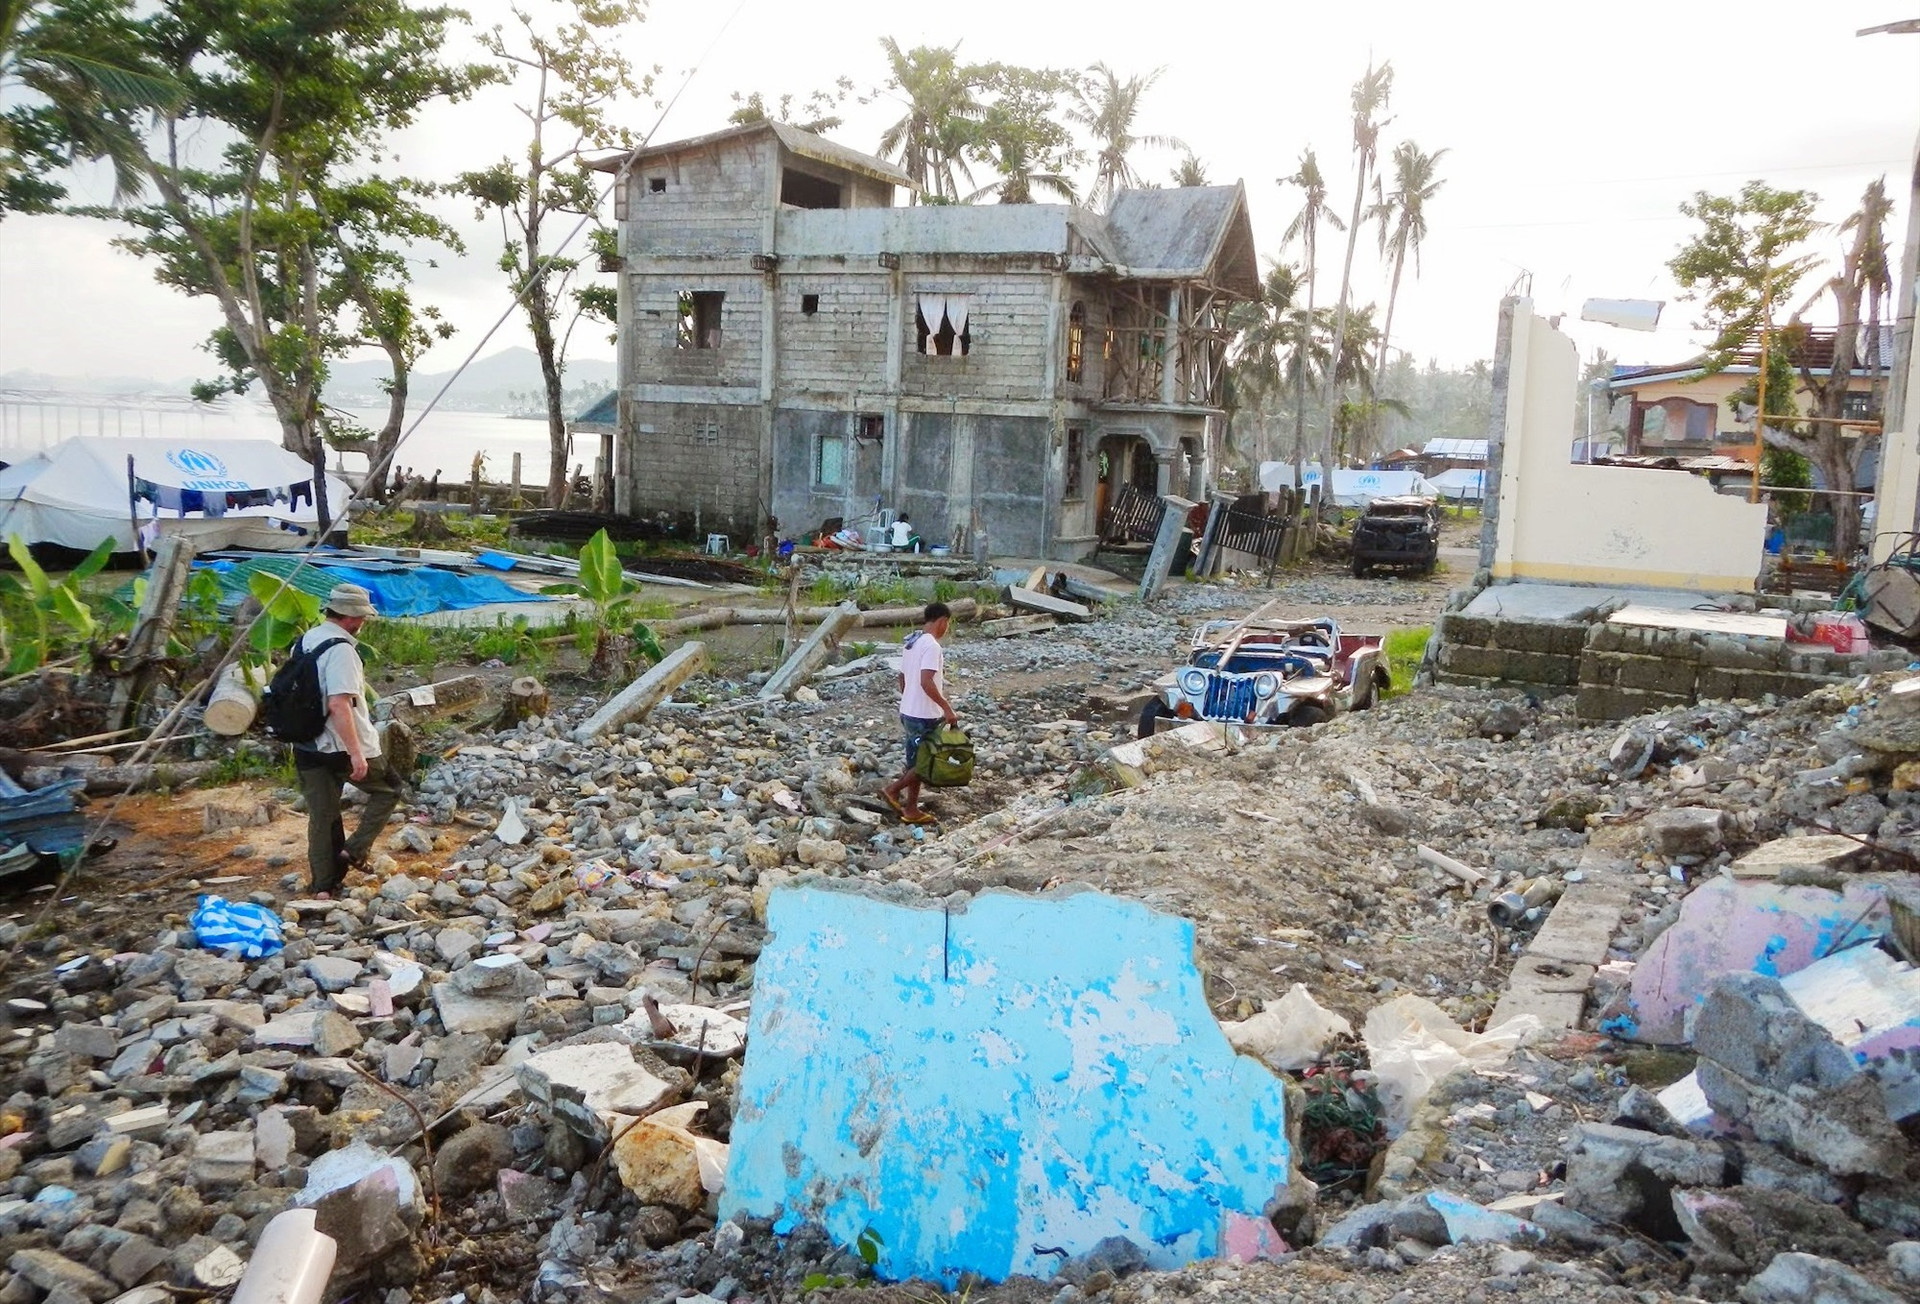 Philippines là một trong những quốc gia chịu thiệt hại nặng nề trong mùa mưa bão hằng năm. Ảnh: Credit